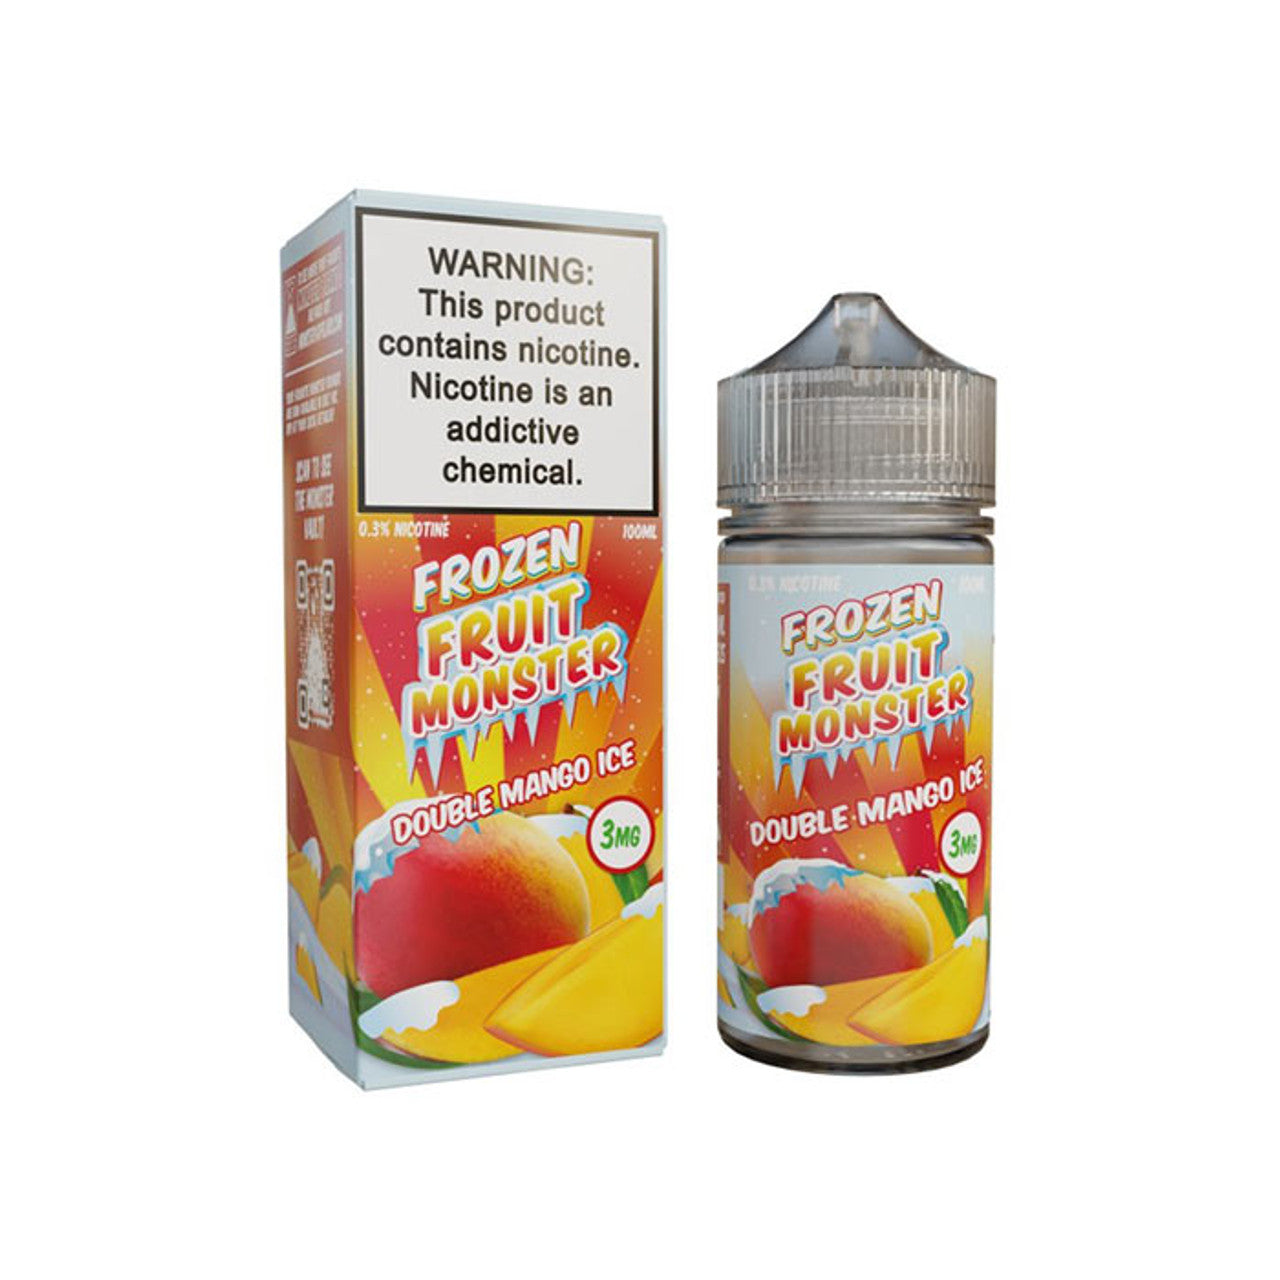 MONSTER Frozen Fruit Monster E-Liquids